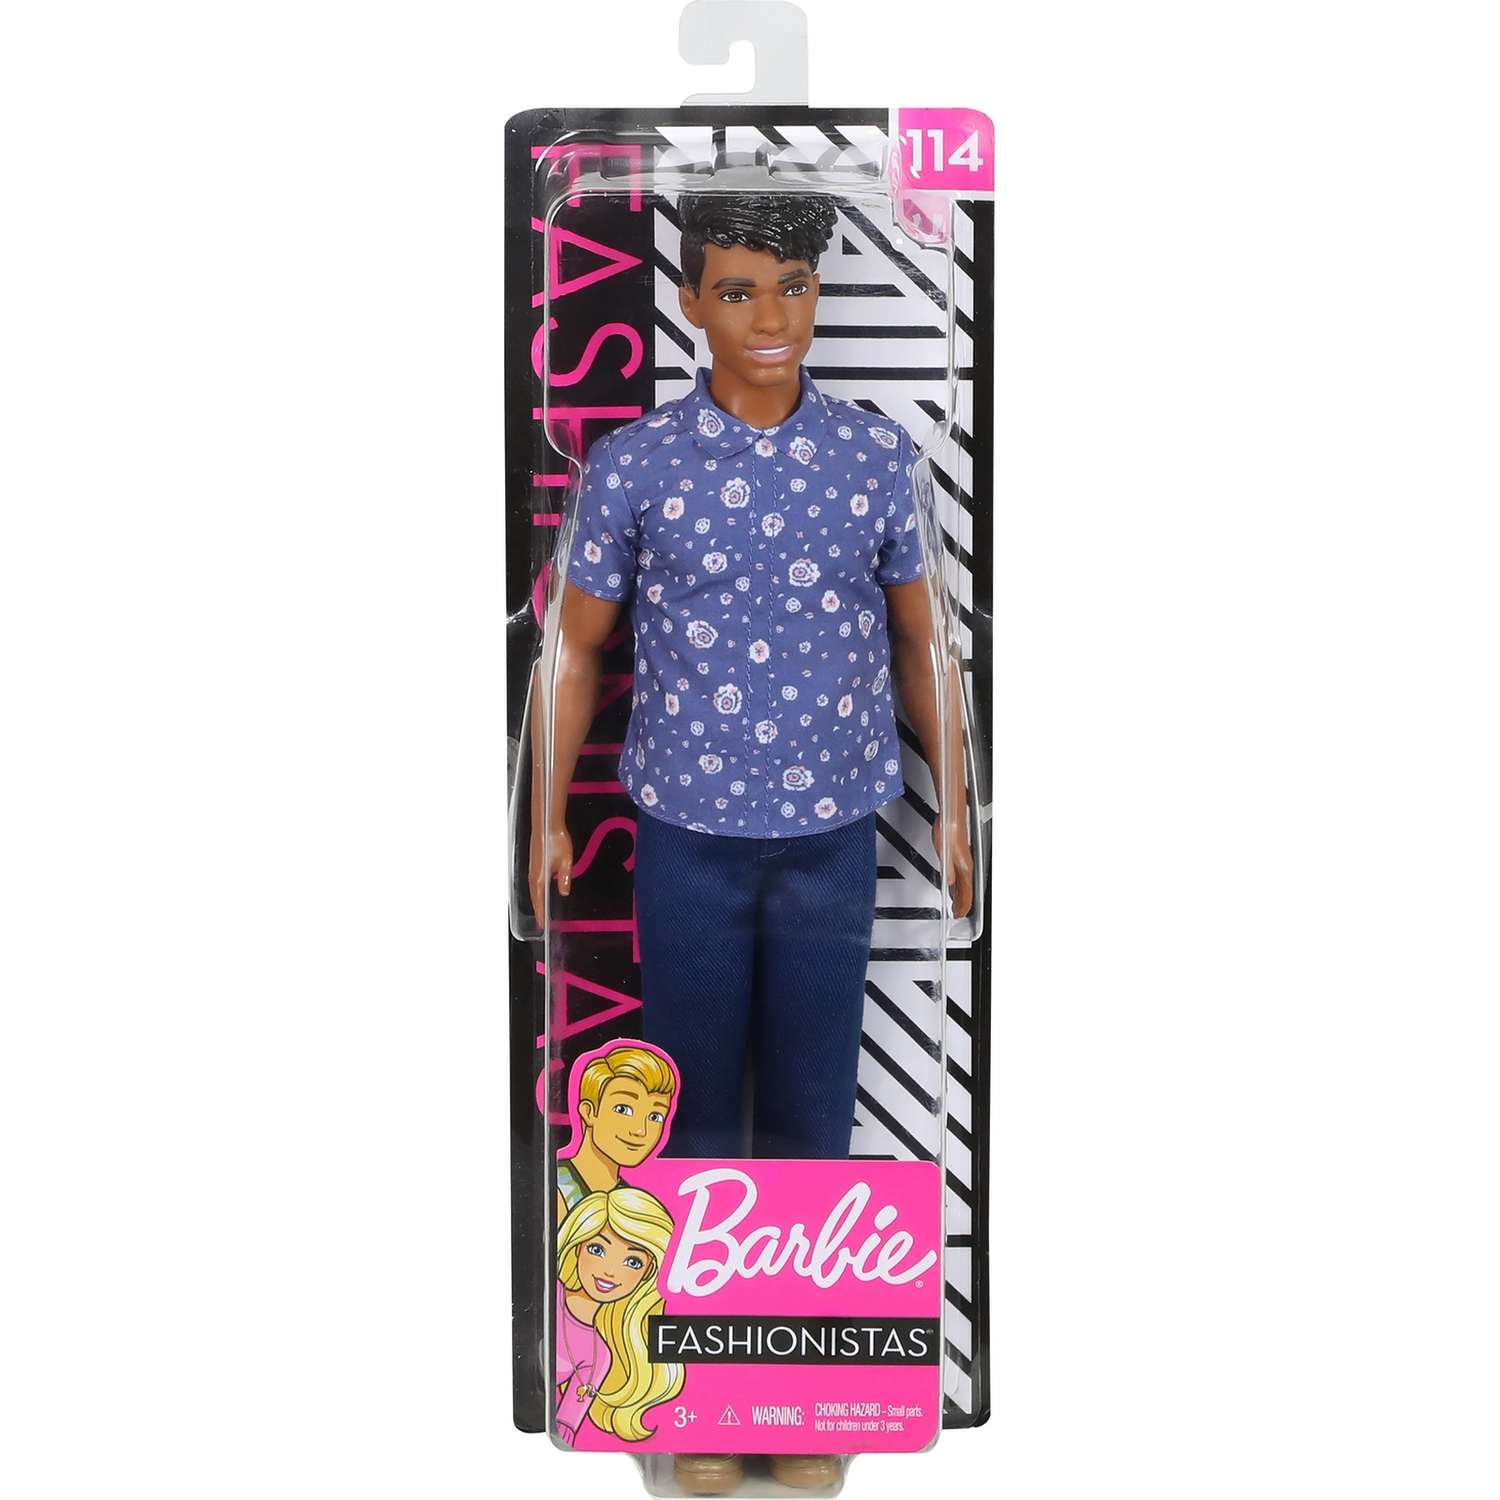 Кукла Barbie Игра с модой Кен 114 В рубашке с цветочным принтом FXL61 DWK44 - фото 2